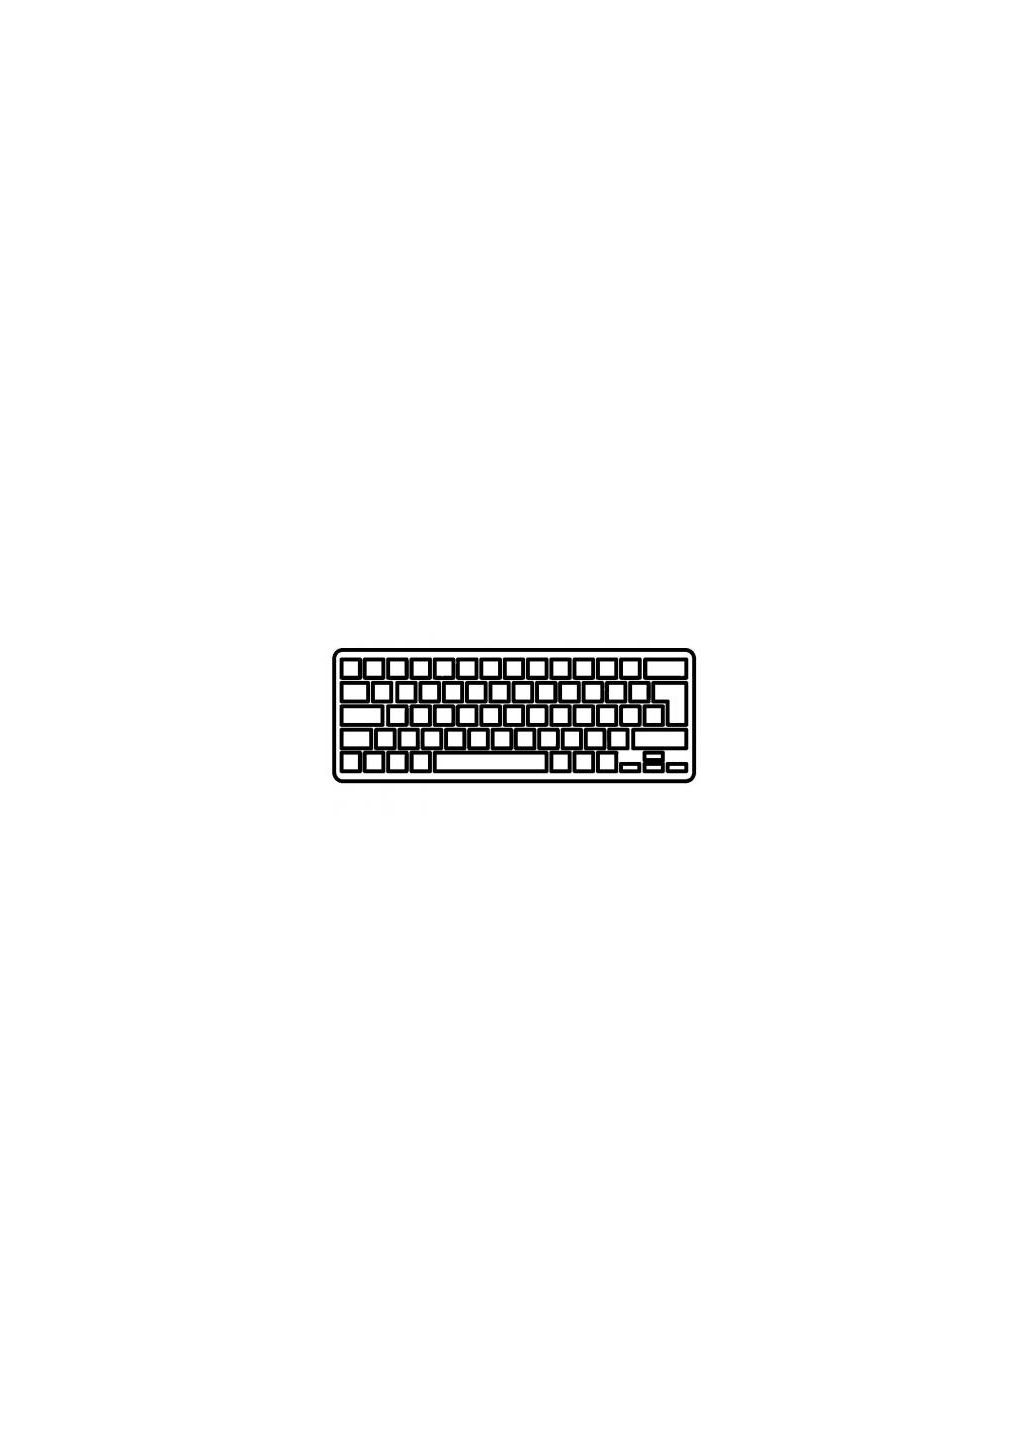 Клавиатура ноутбука Macbook Pro 15.4" A1286 (20092012) черн. без рамки RU/US (A43903) Apple macbook pro 15.4" a1286 (2009-2012) черн.без рамки (276707522)